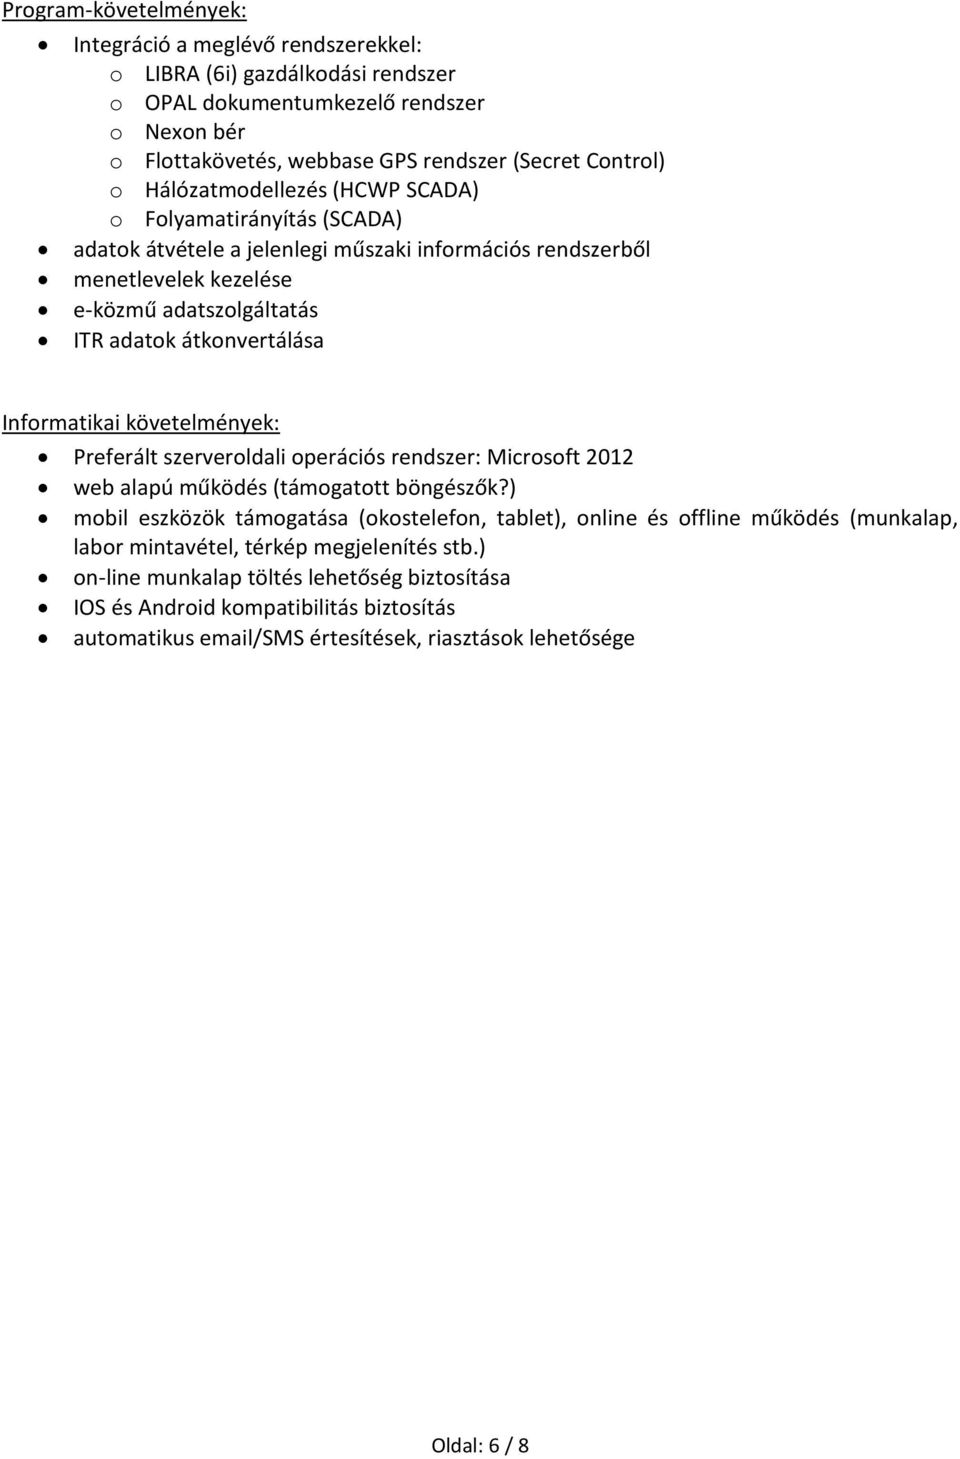 Informatikai követelmények: Preferált szerveroldali operációs rendszer: Microsoft 2012 web alapú működés (támogatott böngészők?